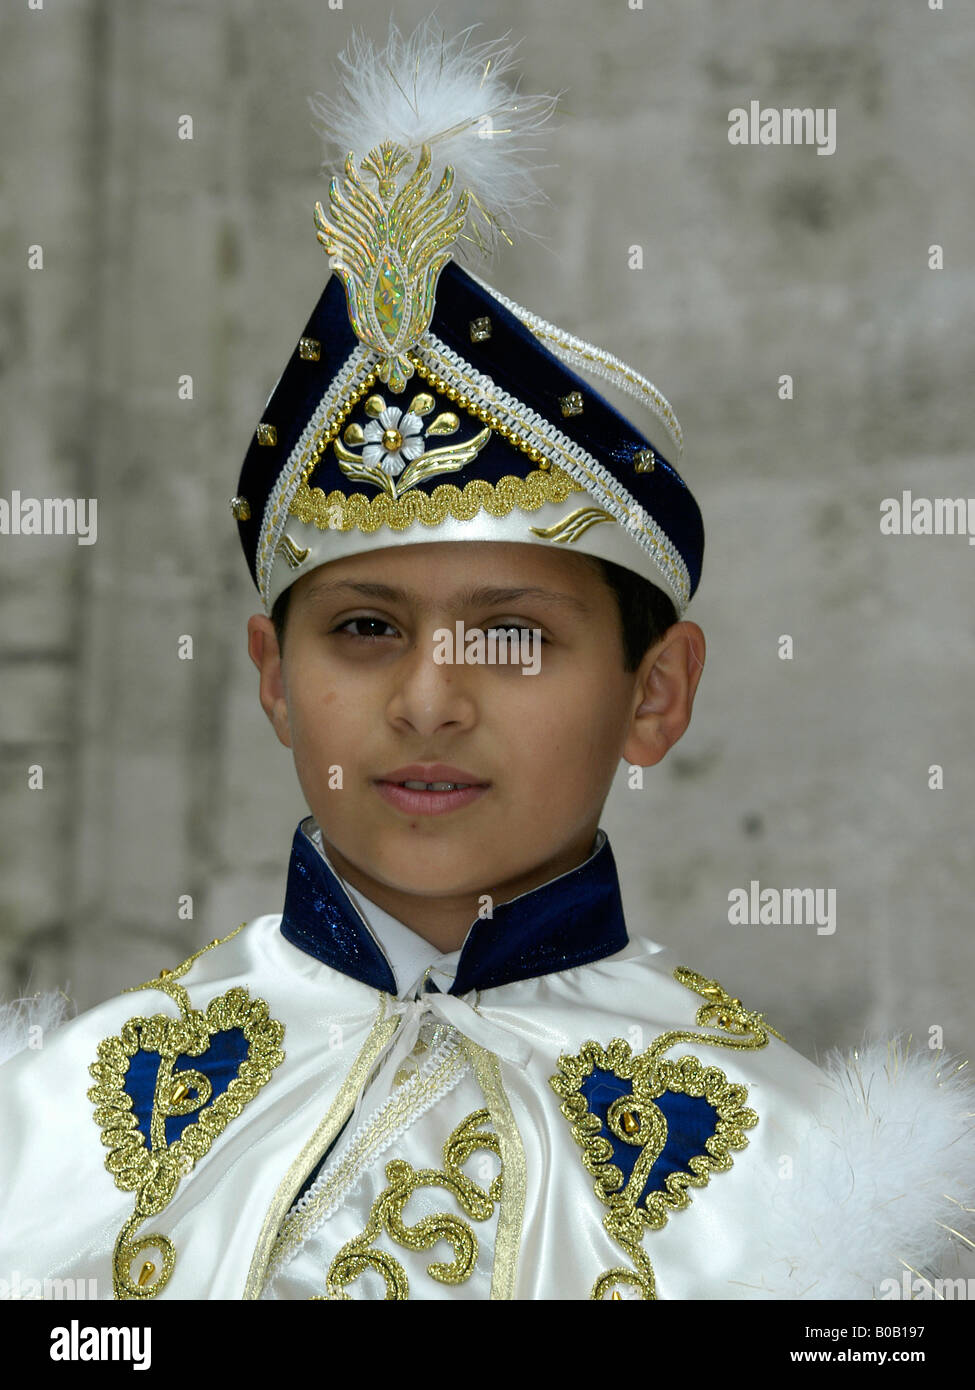 Ein türkischer Junge, schön gekleidet, am Tag seiner Beschneidung Stockfoto